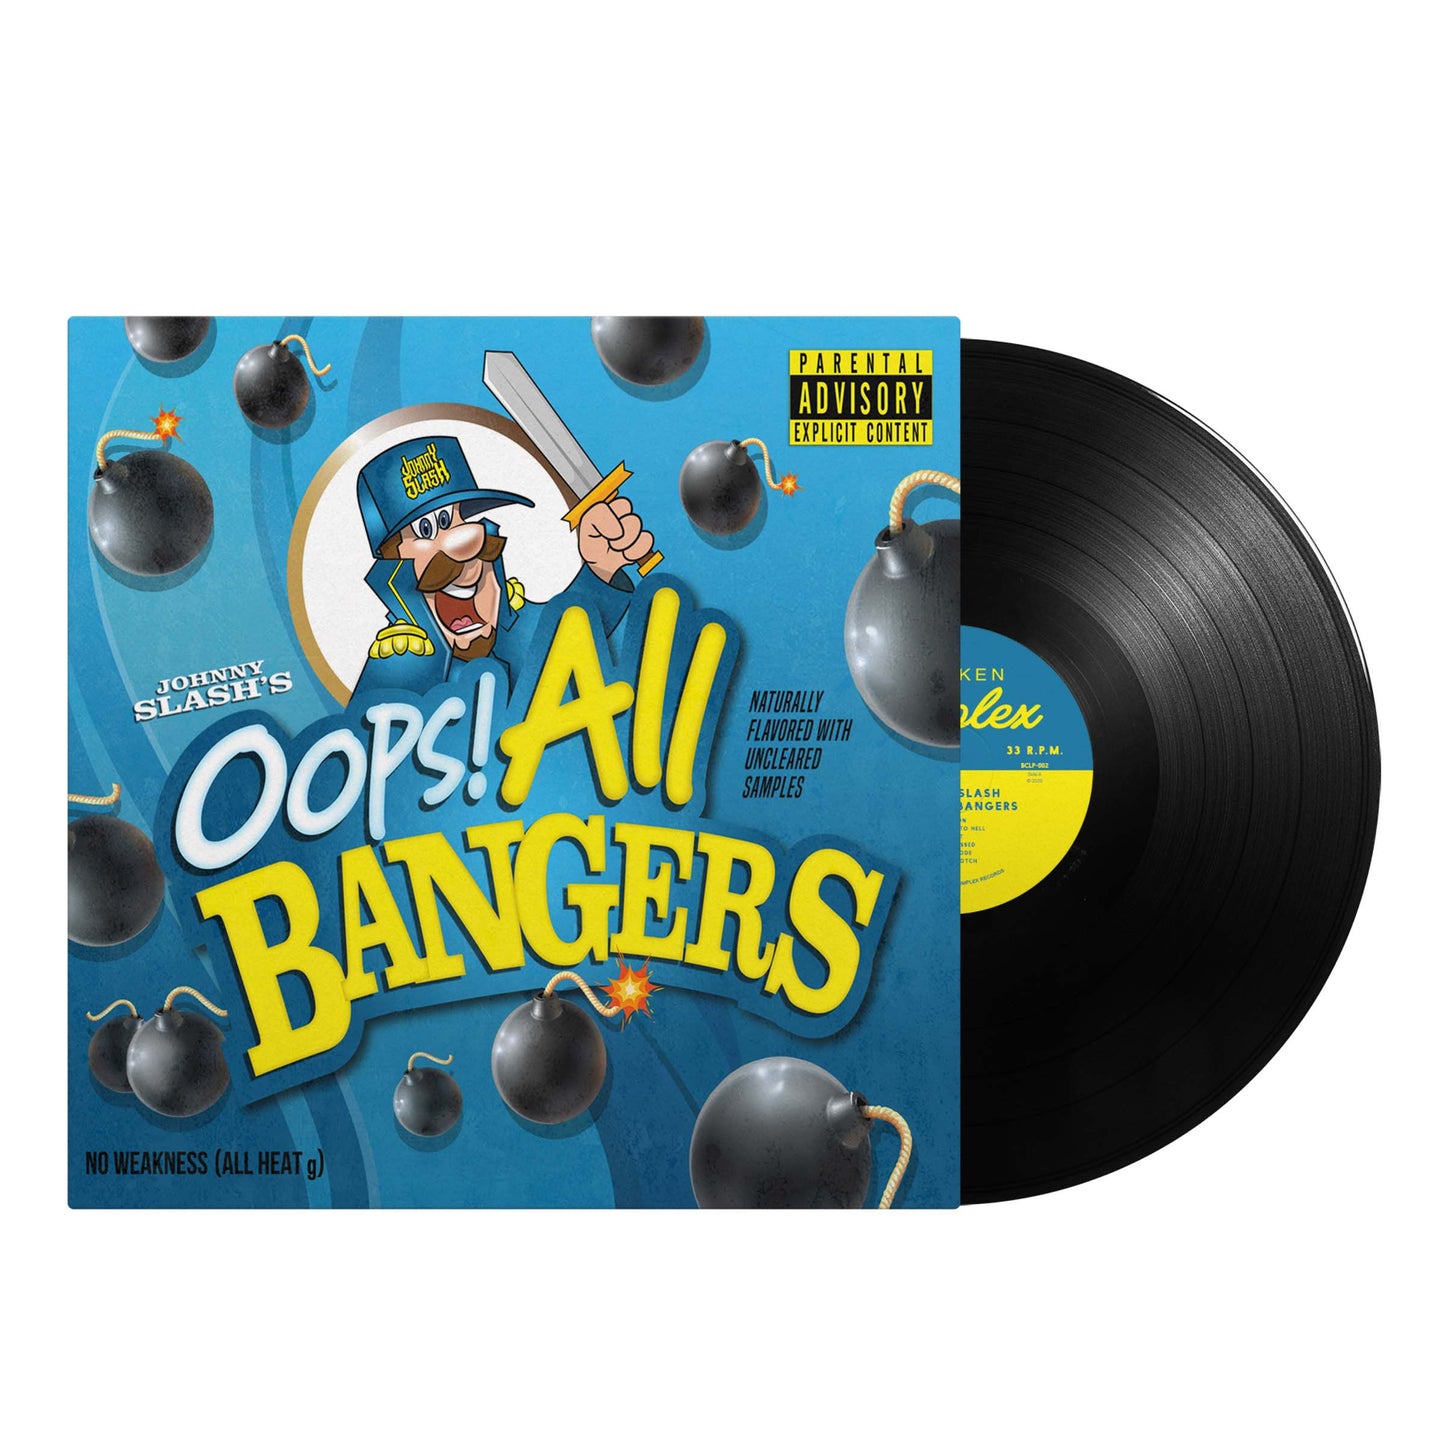 Oops! All Bangers (12" Vinyl)